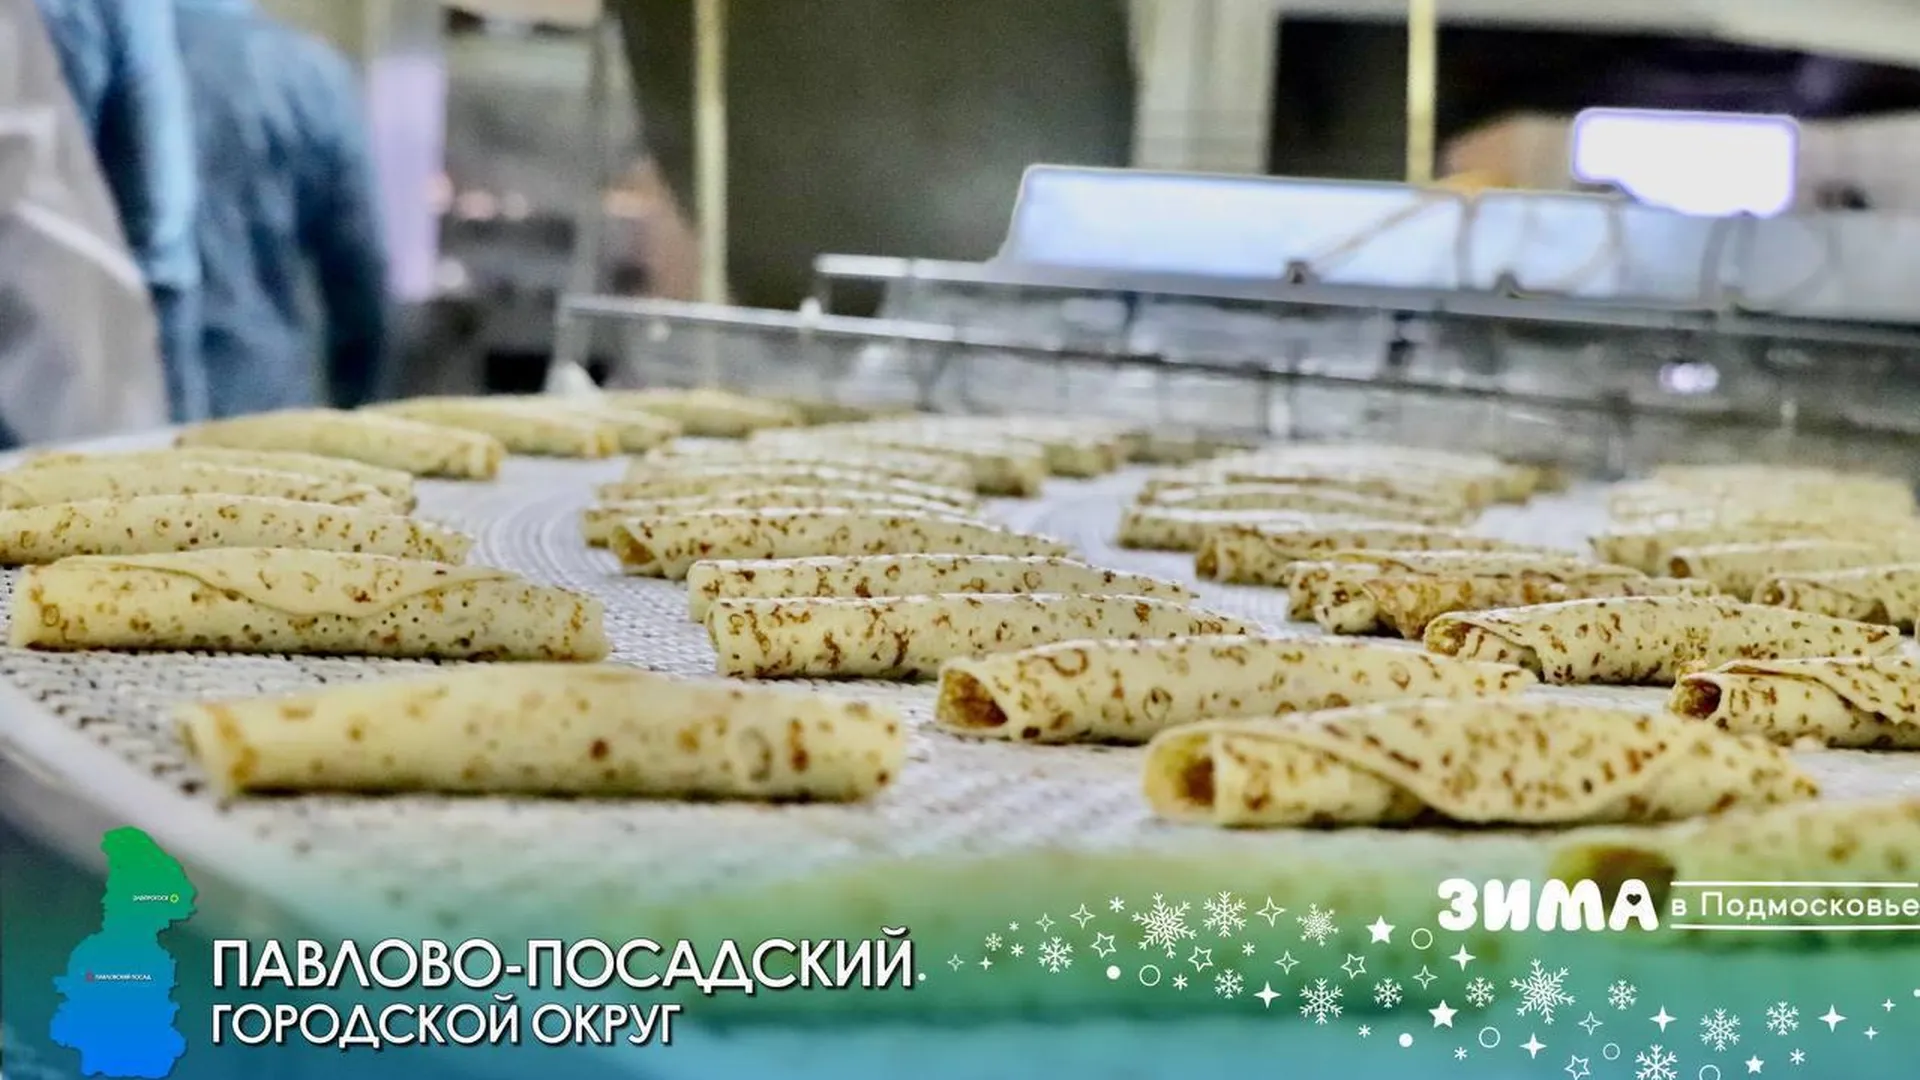 В Павлово-Посадского городском округе расширят пищевое производство